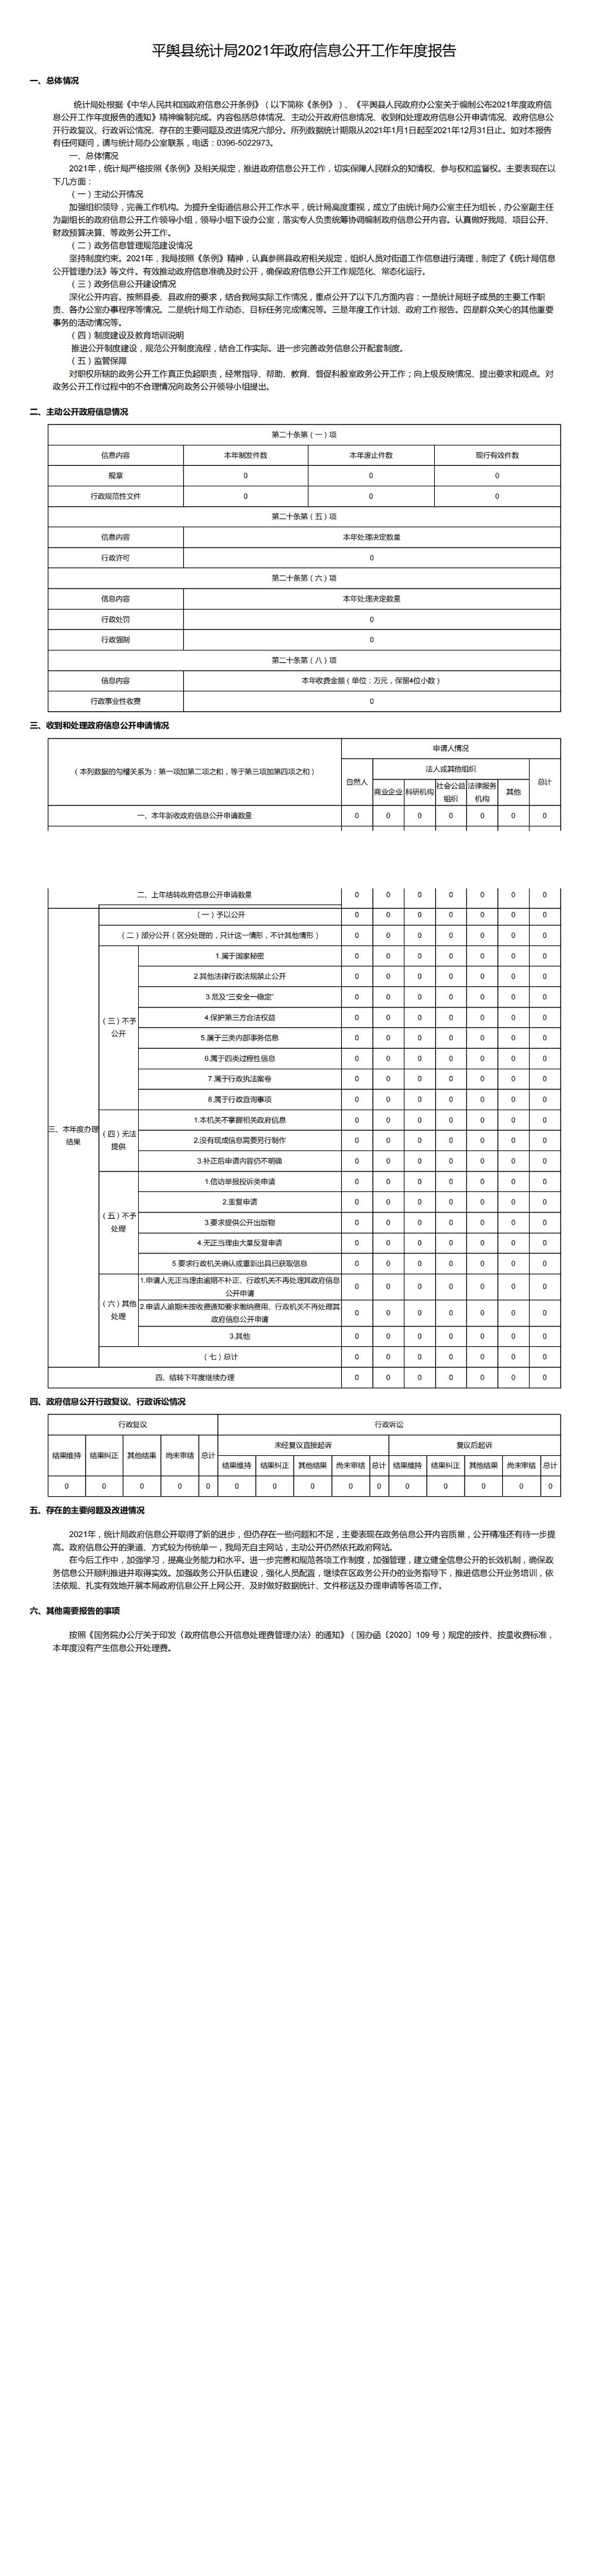 平舆县统计局2021年政府信息公开工作年度报告_00.jpg